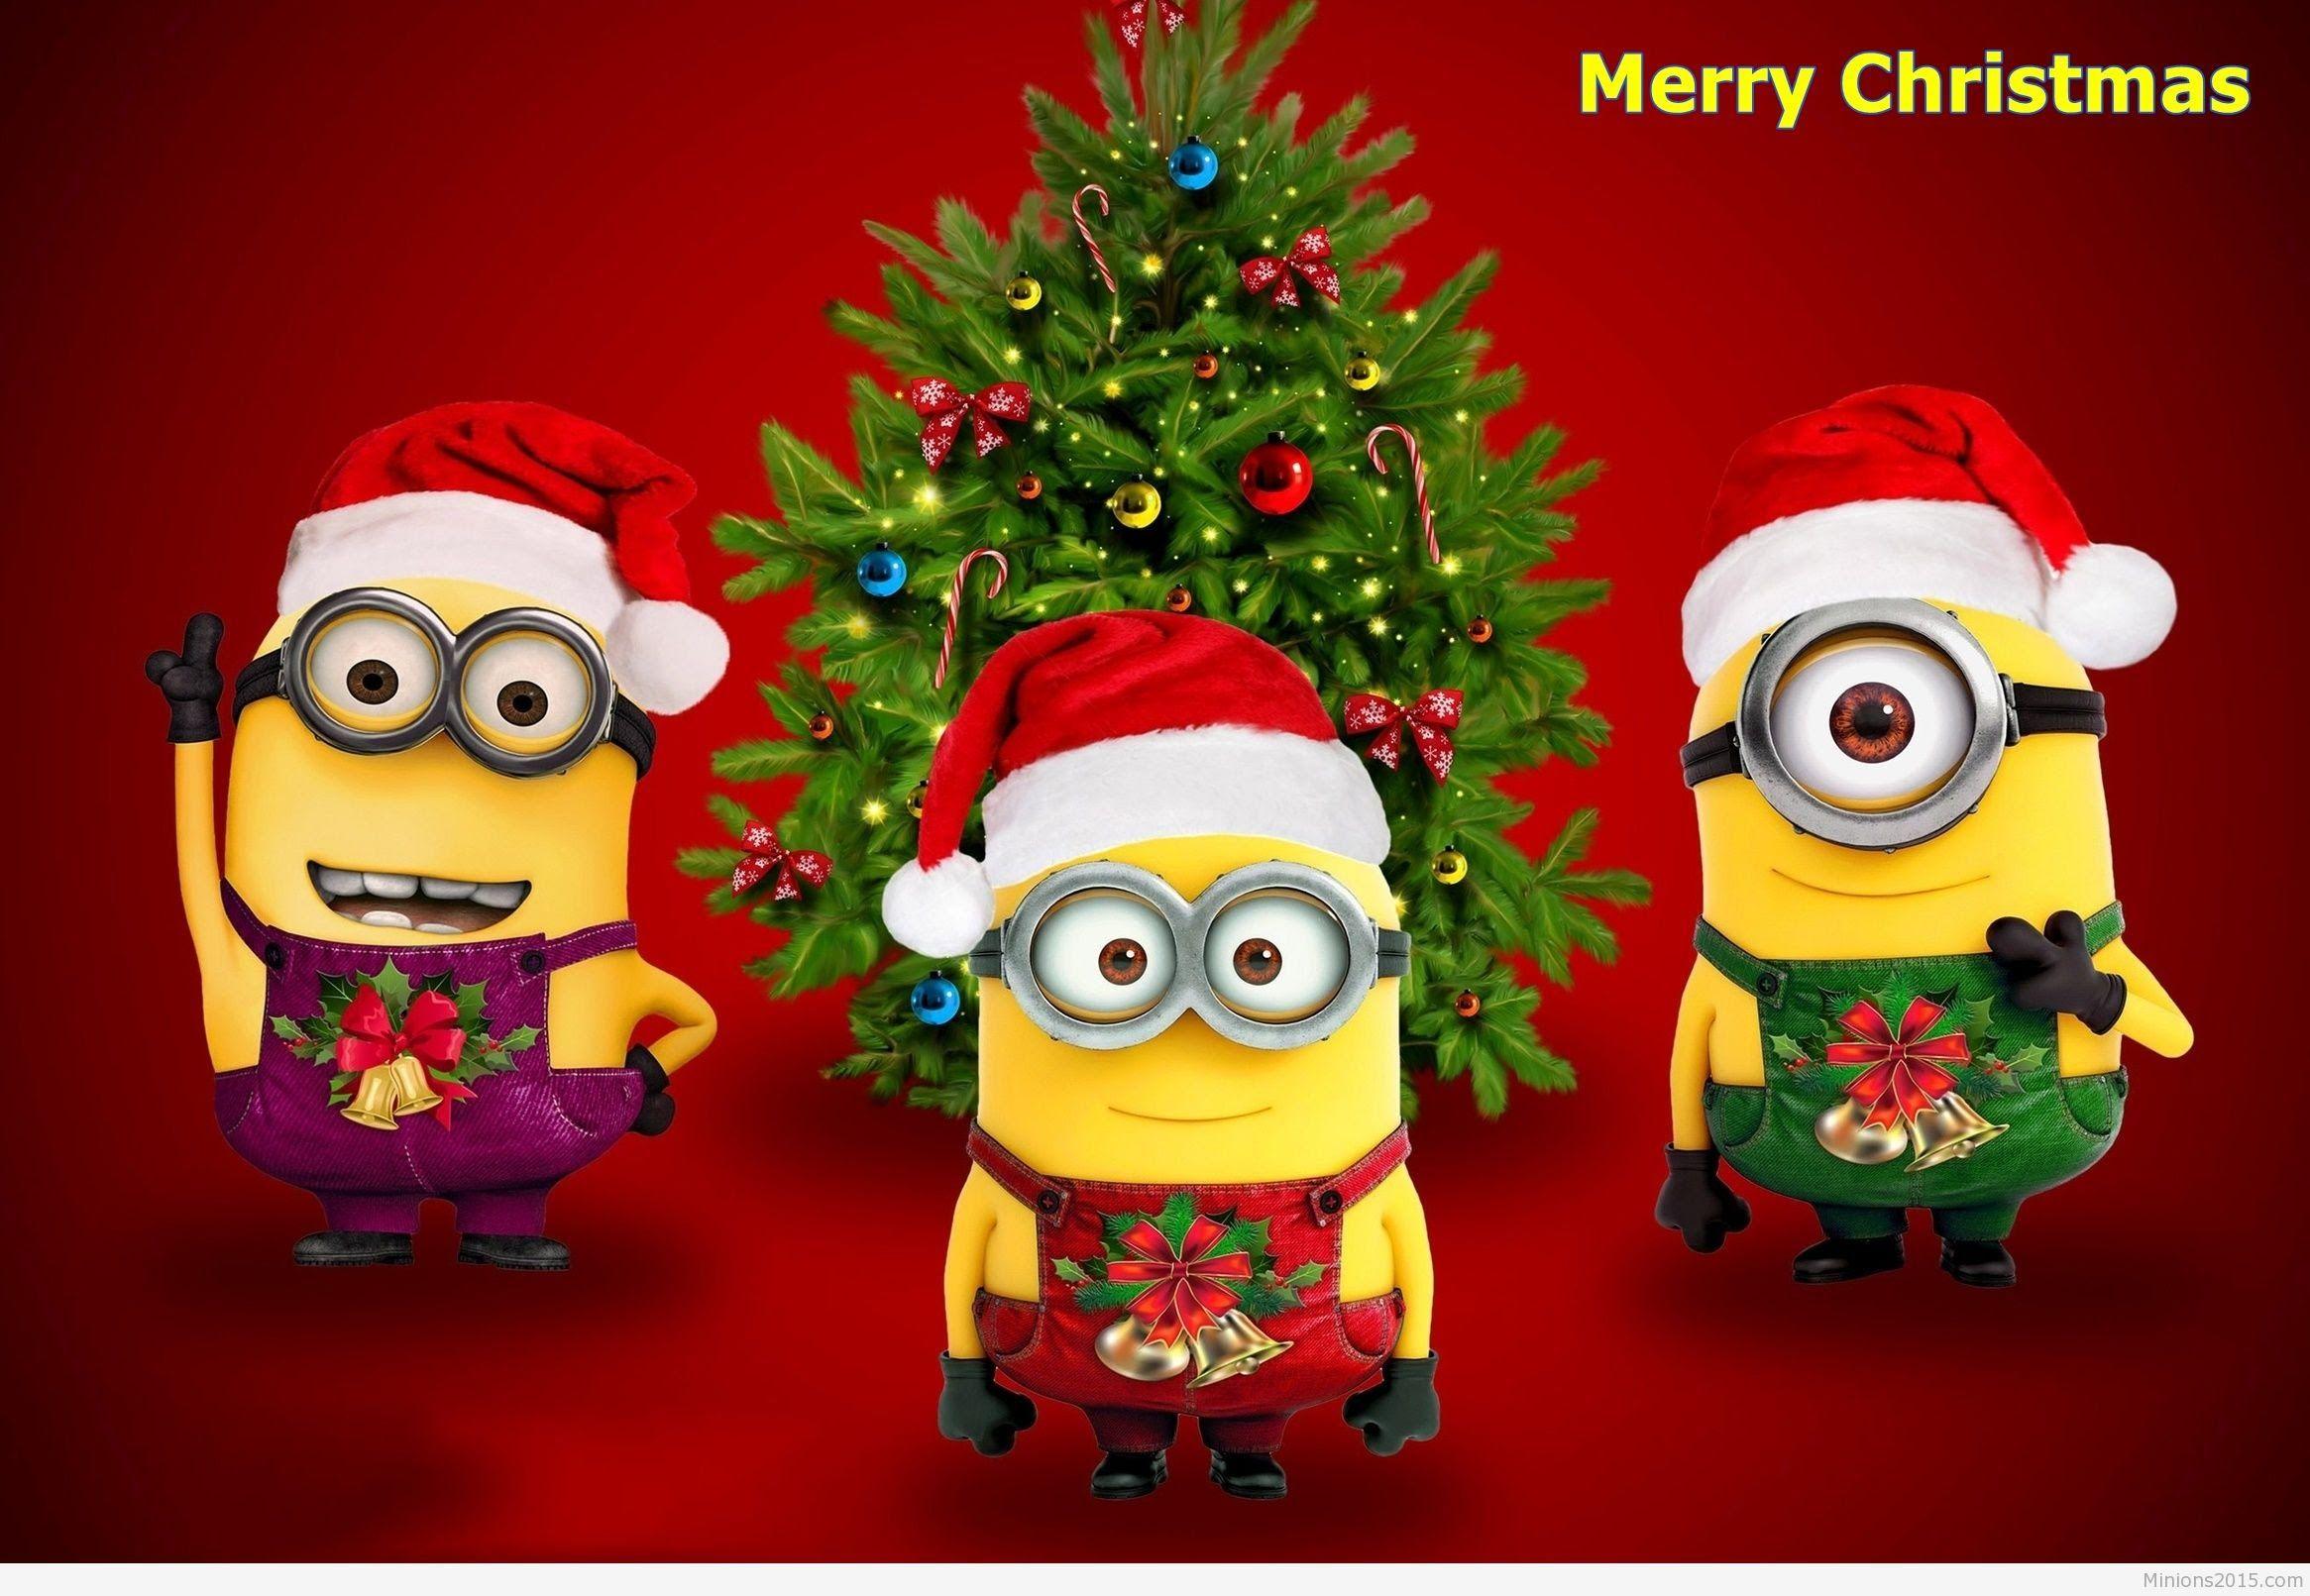 Jingle bells Christmas Songs for Children - merry christmas 2017